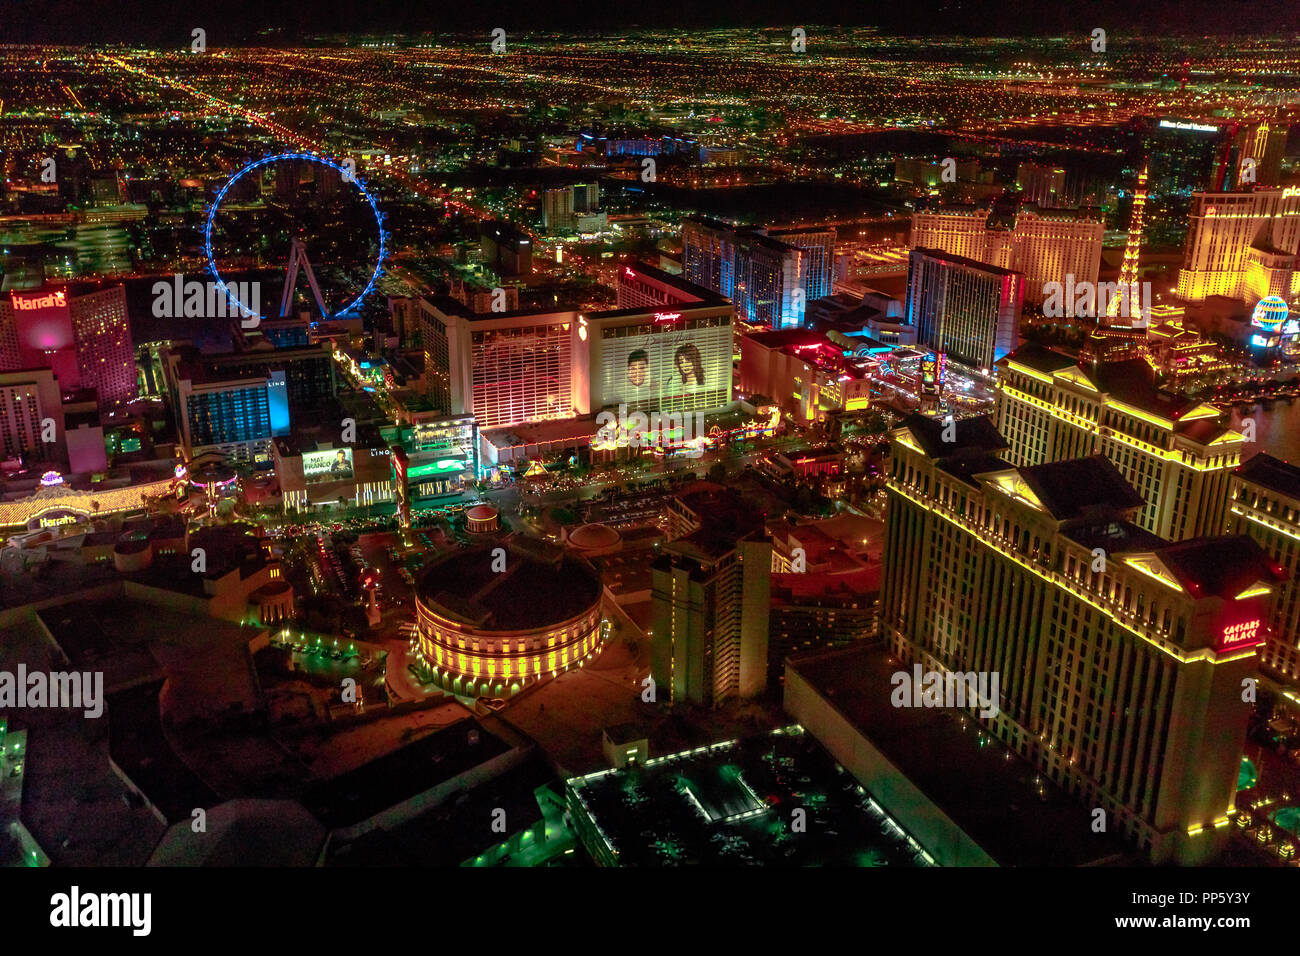 Las Vegas, Nevada, United States - 18 août 2018 : Vue aérienne de la Bande  de Las Vegas Skyline illuminée par la nuit. Vol panoramique au-dessus :  High Roller, Caesars Palace, Flamingo,